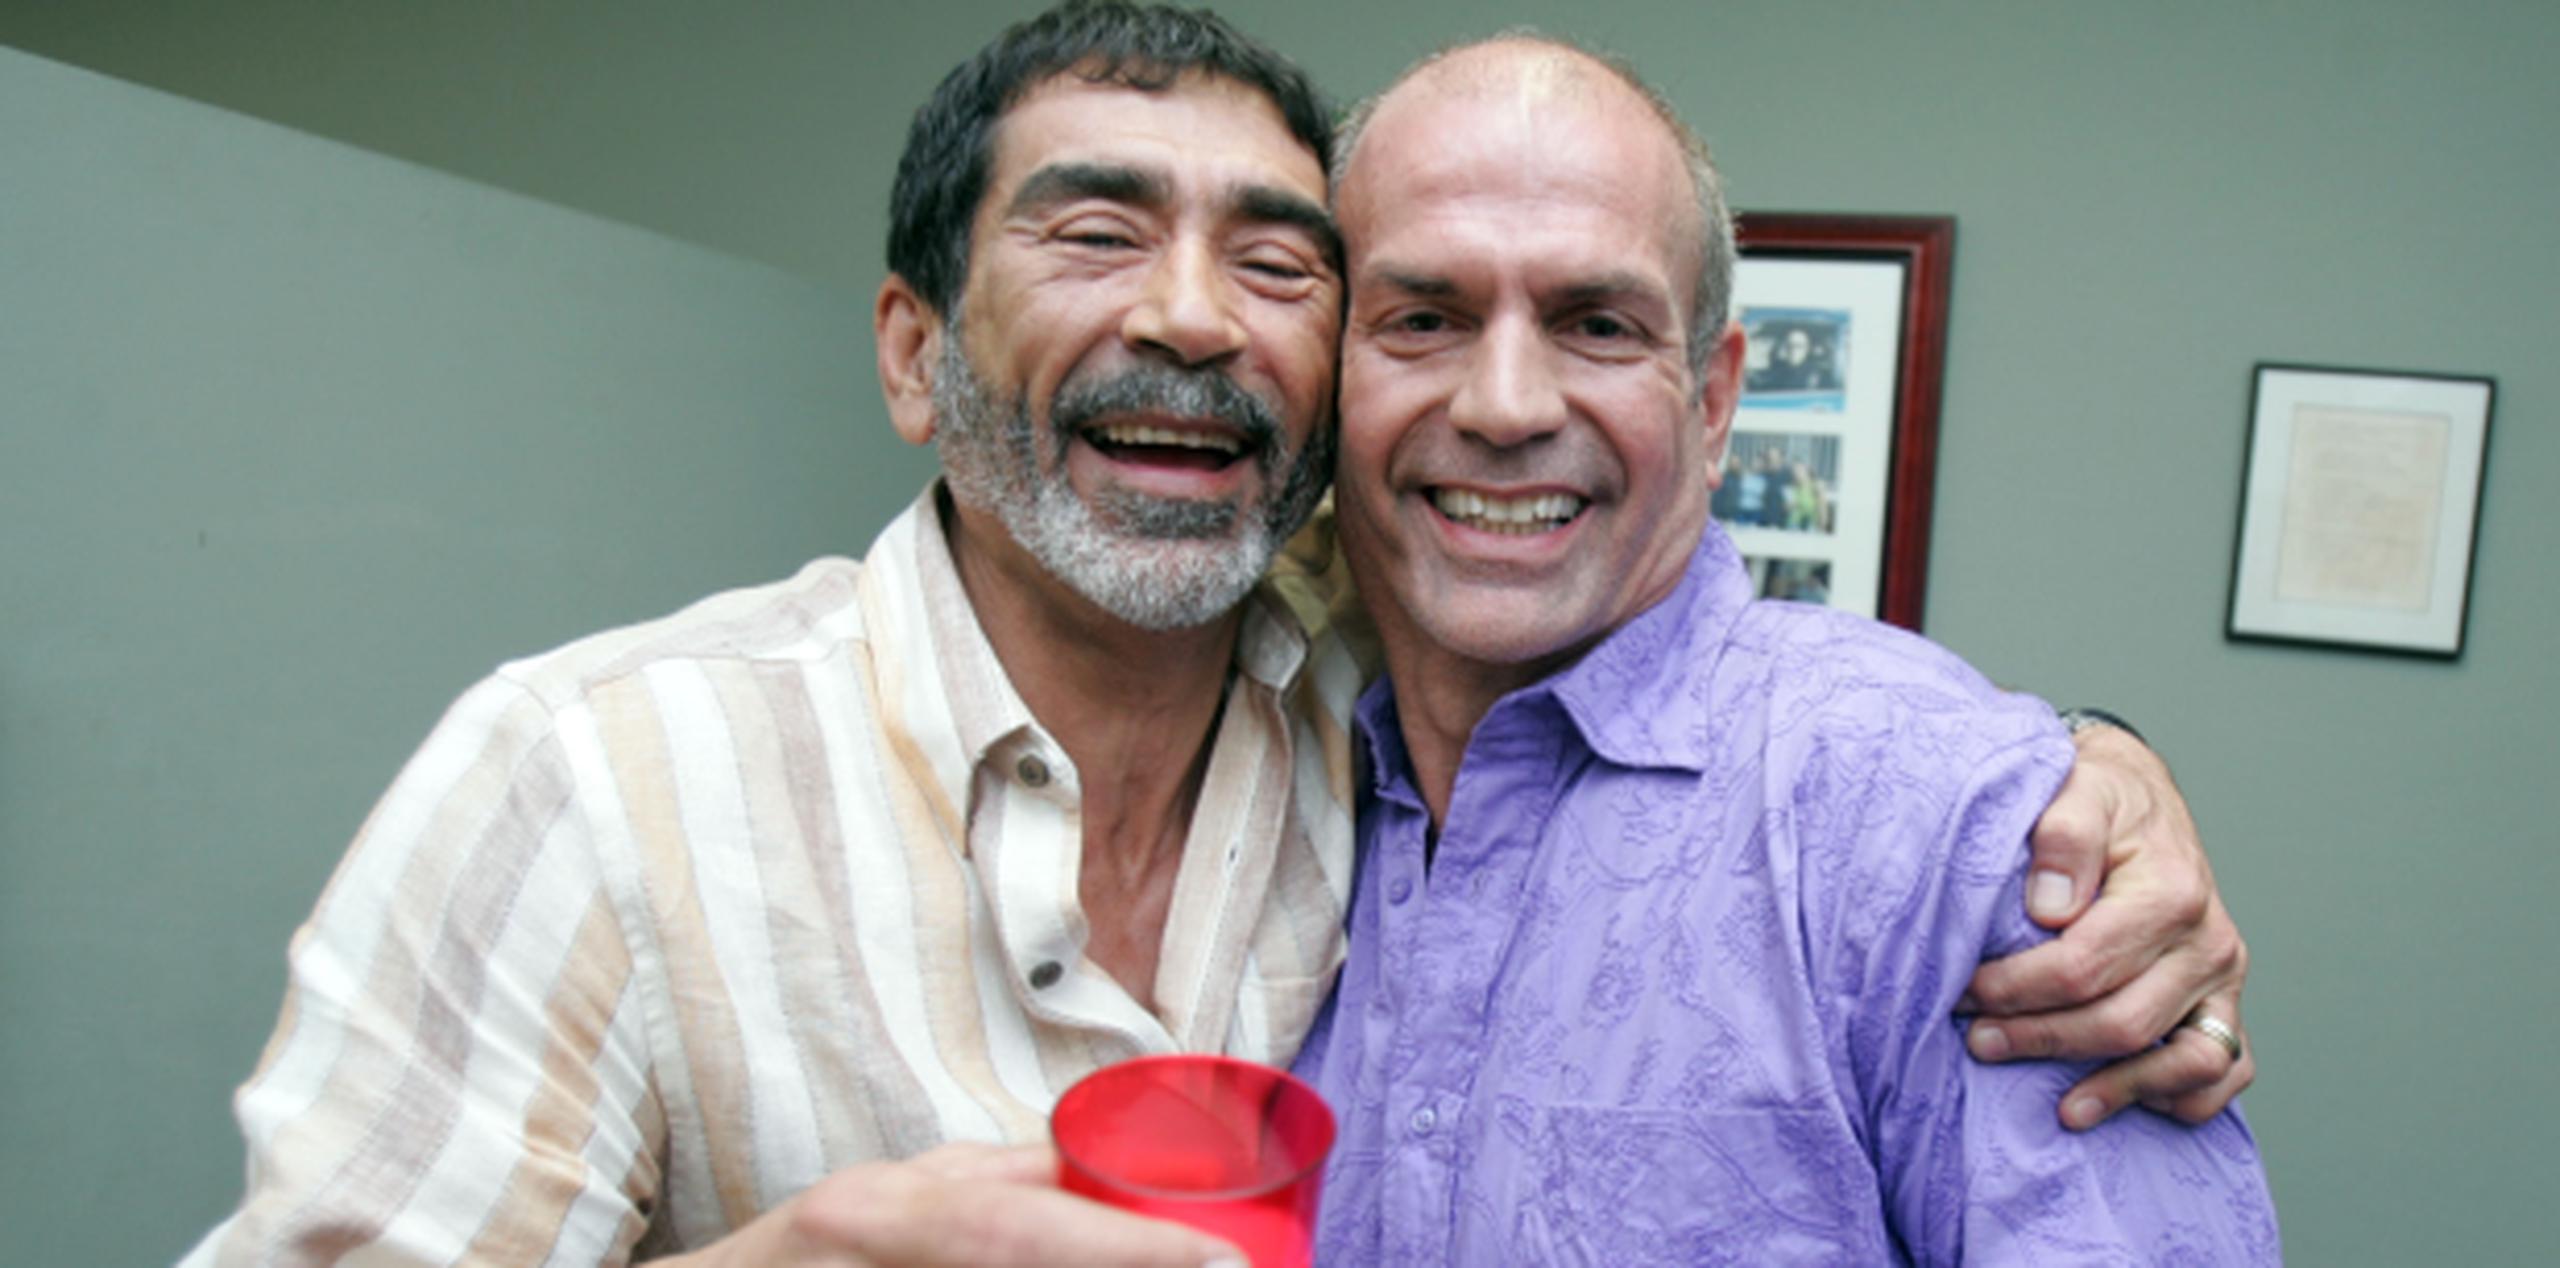 En 2006 Jorge Luis Ramos y Vicente Castro hablaron por primera vez públicamente de su relación sentimental en una entrevista exclusiva con Primera Hora. (Archivo)